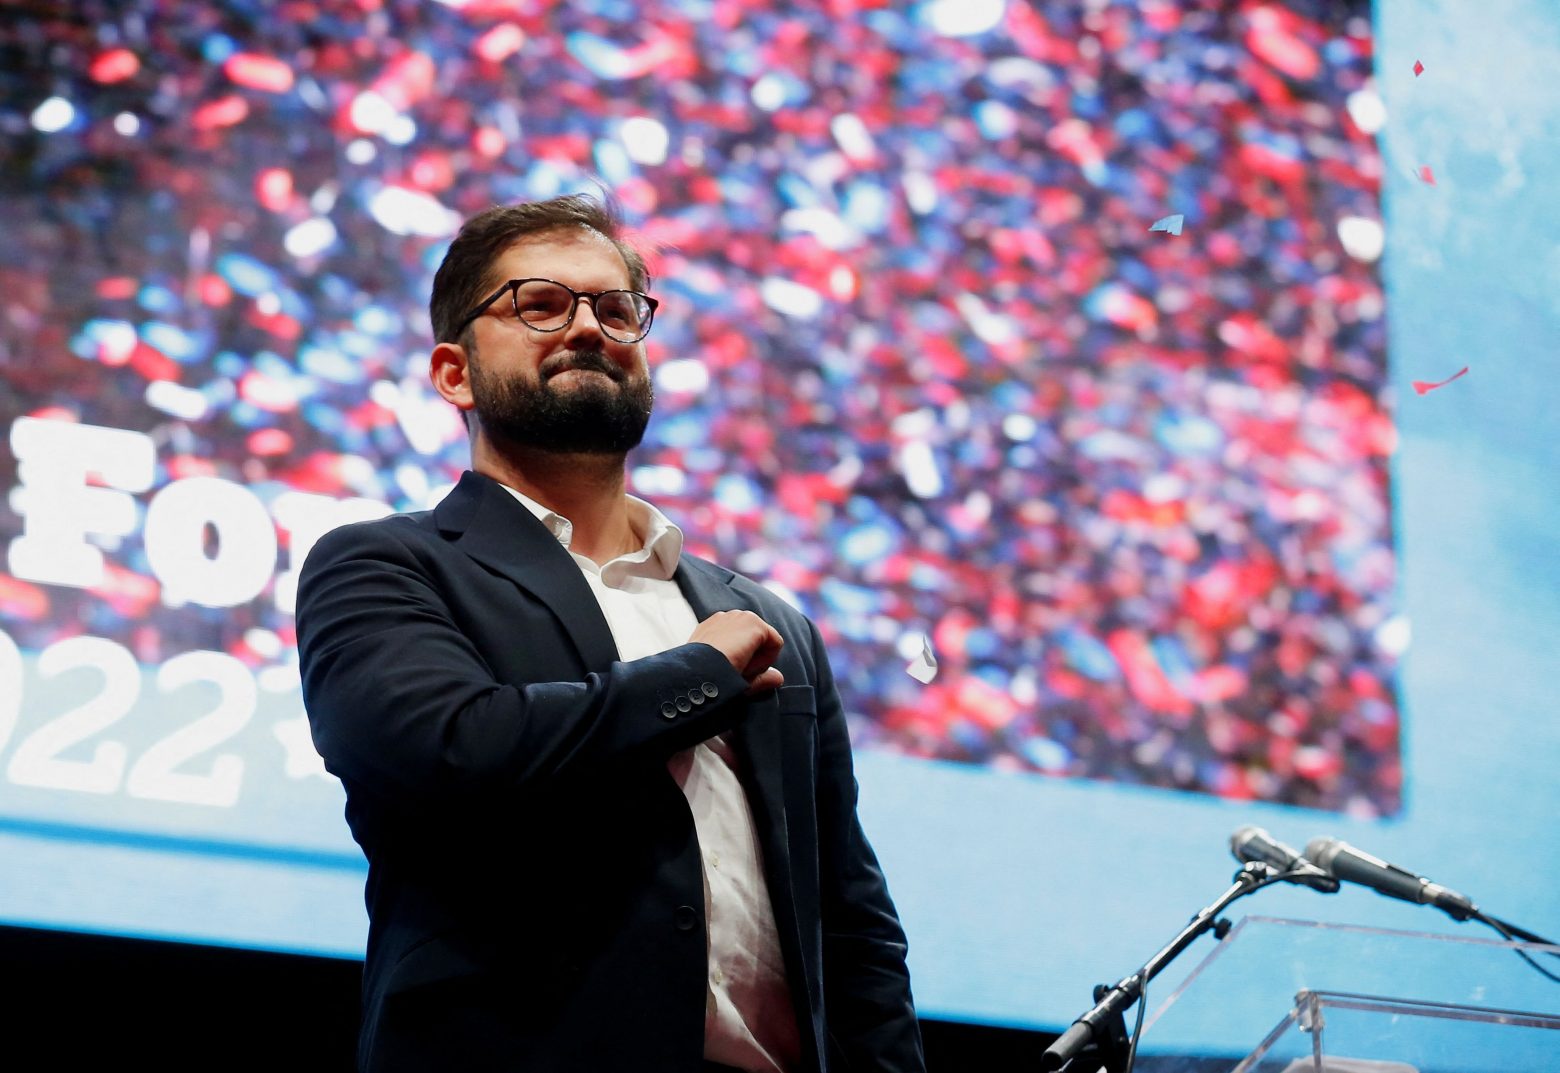 Ο νέος πρόεδρος της Χιλής υπόσχεται να θάψει τον νεοφιλελευθερισμό